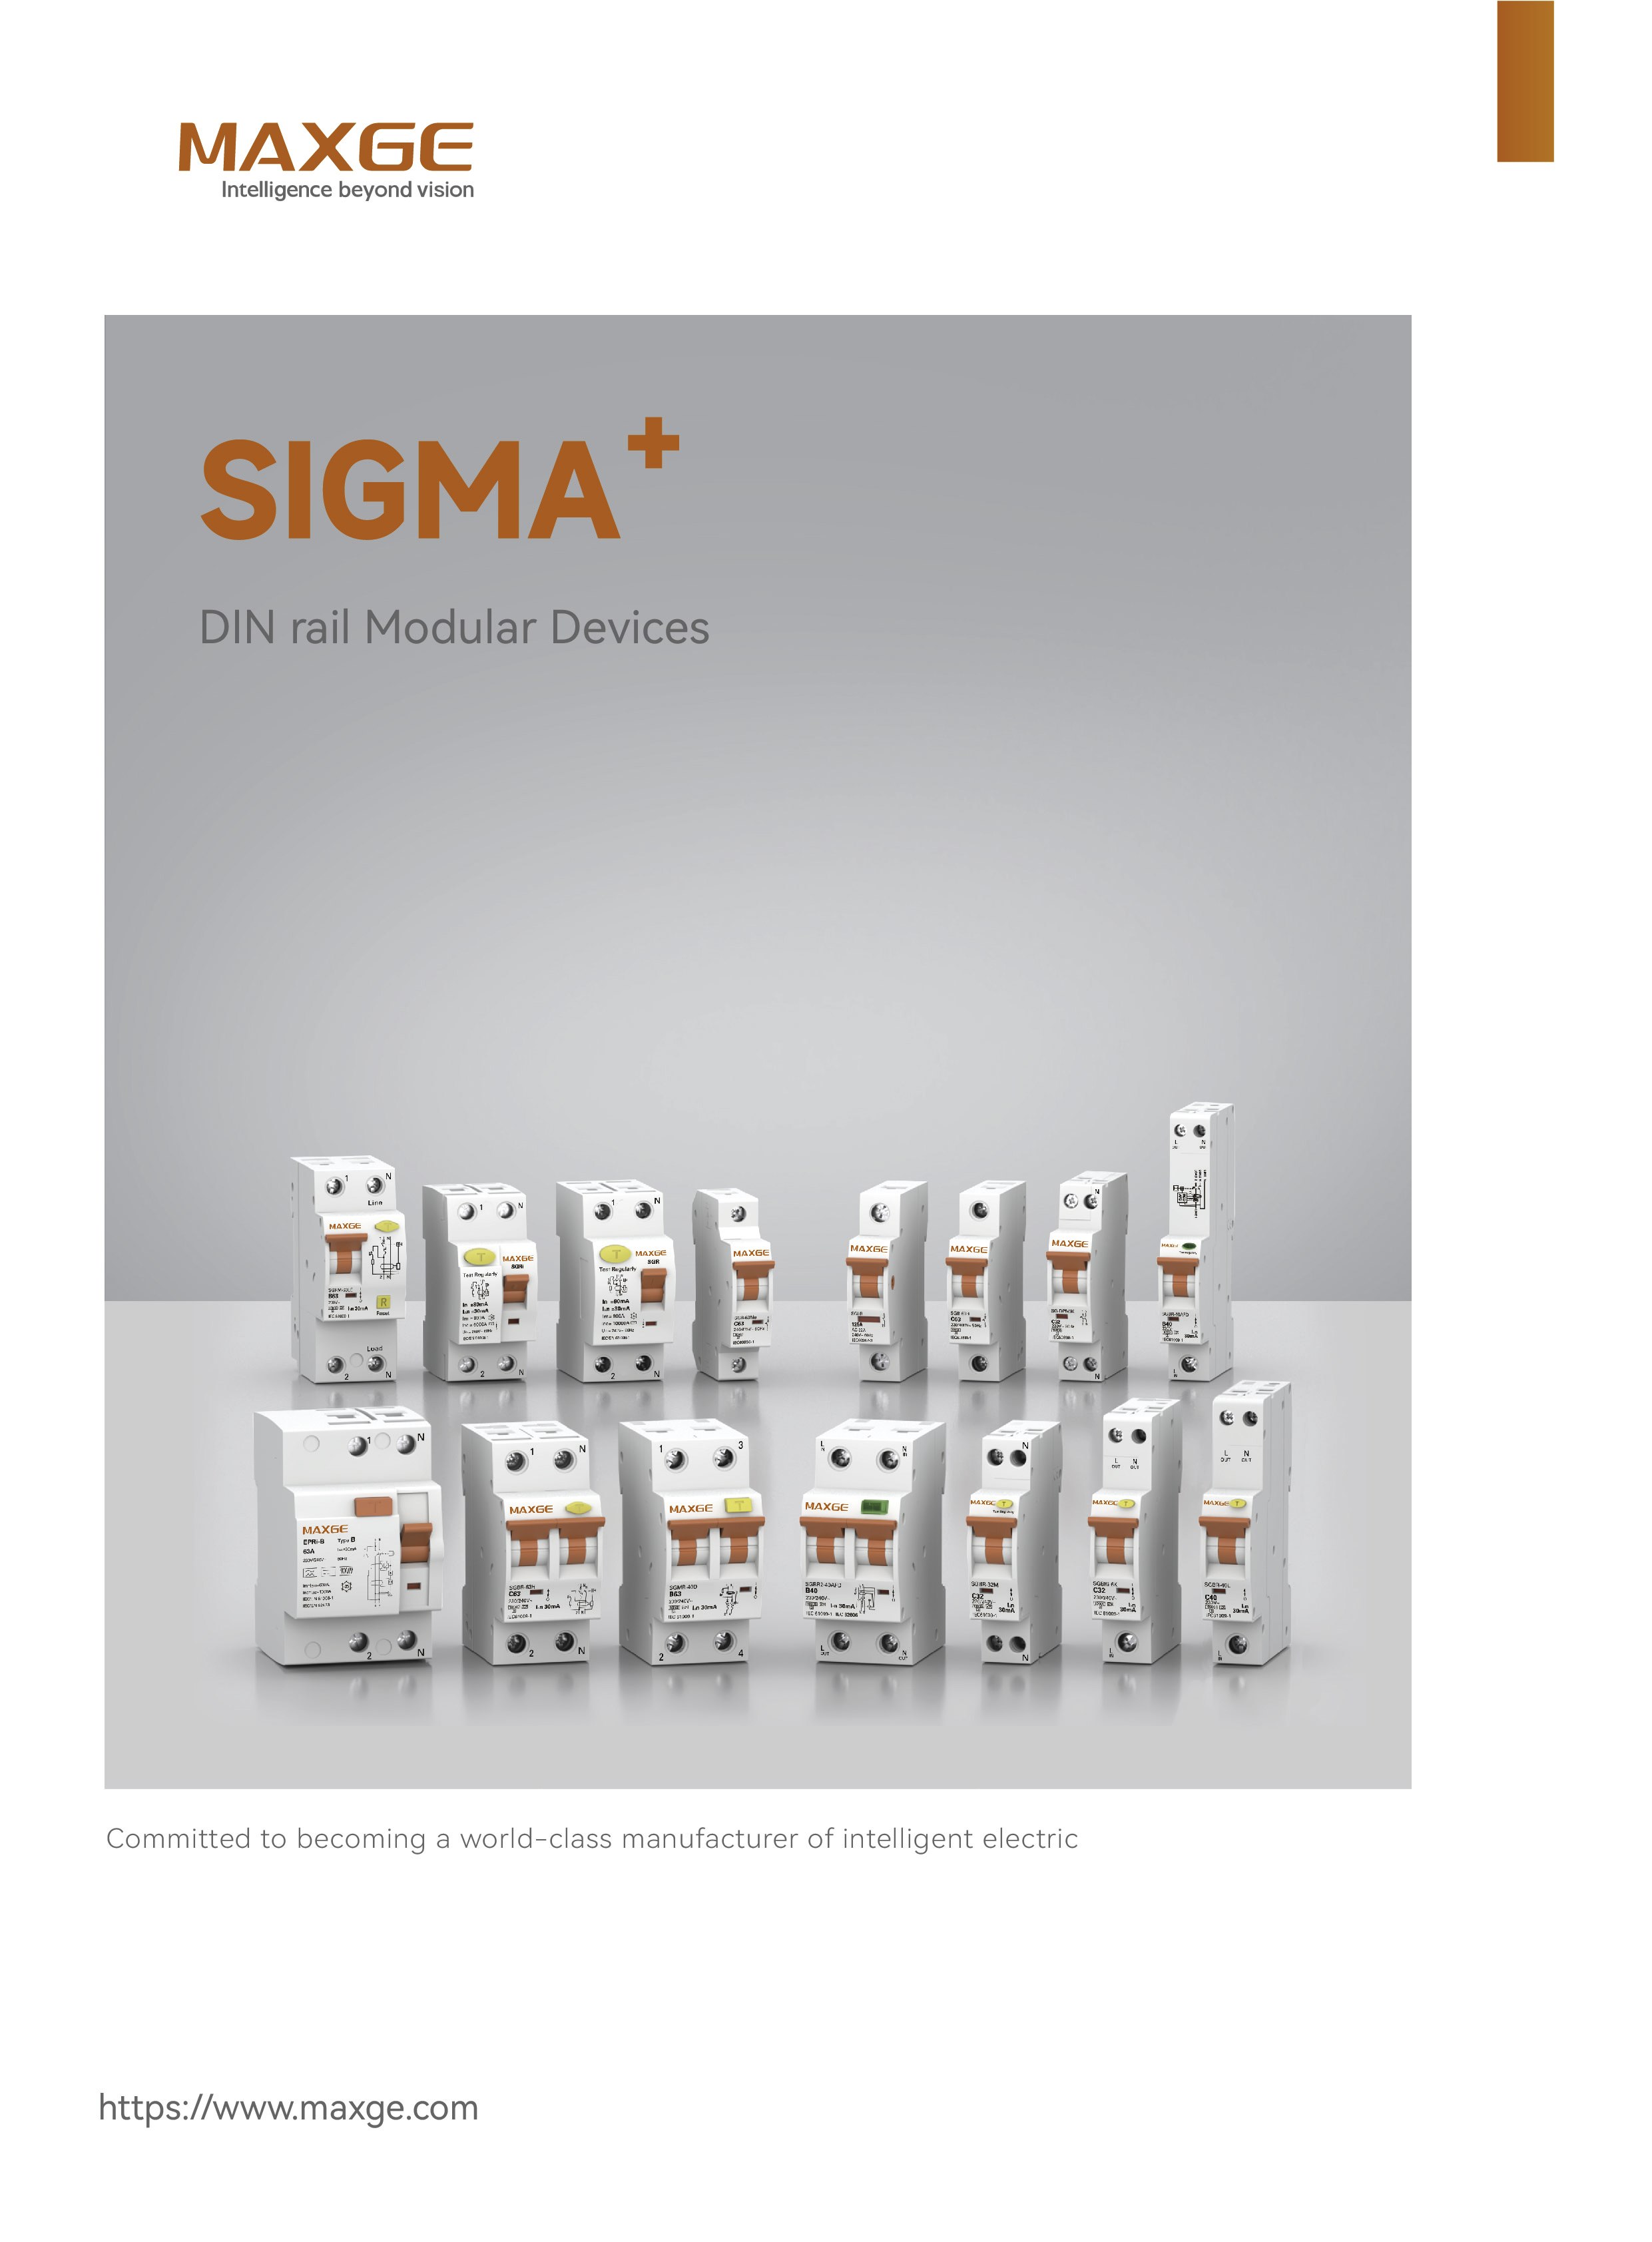 MAXGE SIGMA DIN rail Modular Devices catalog